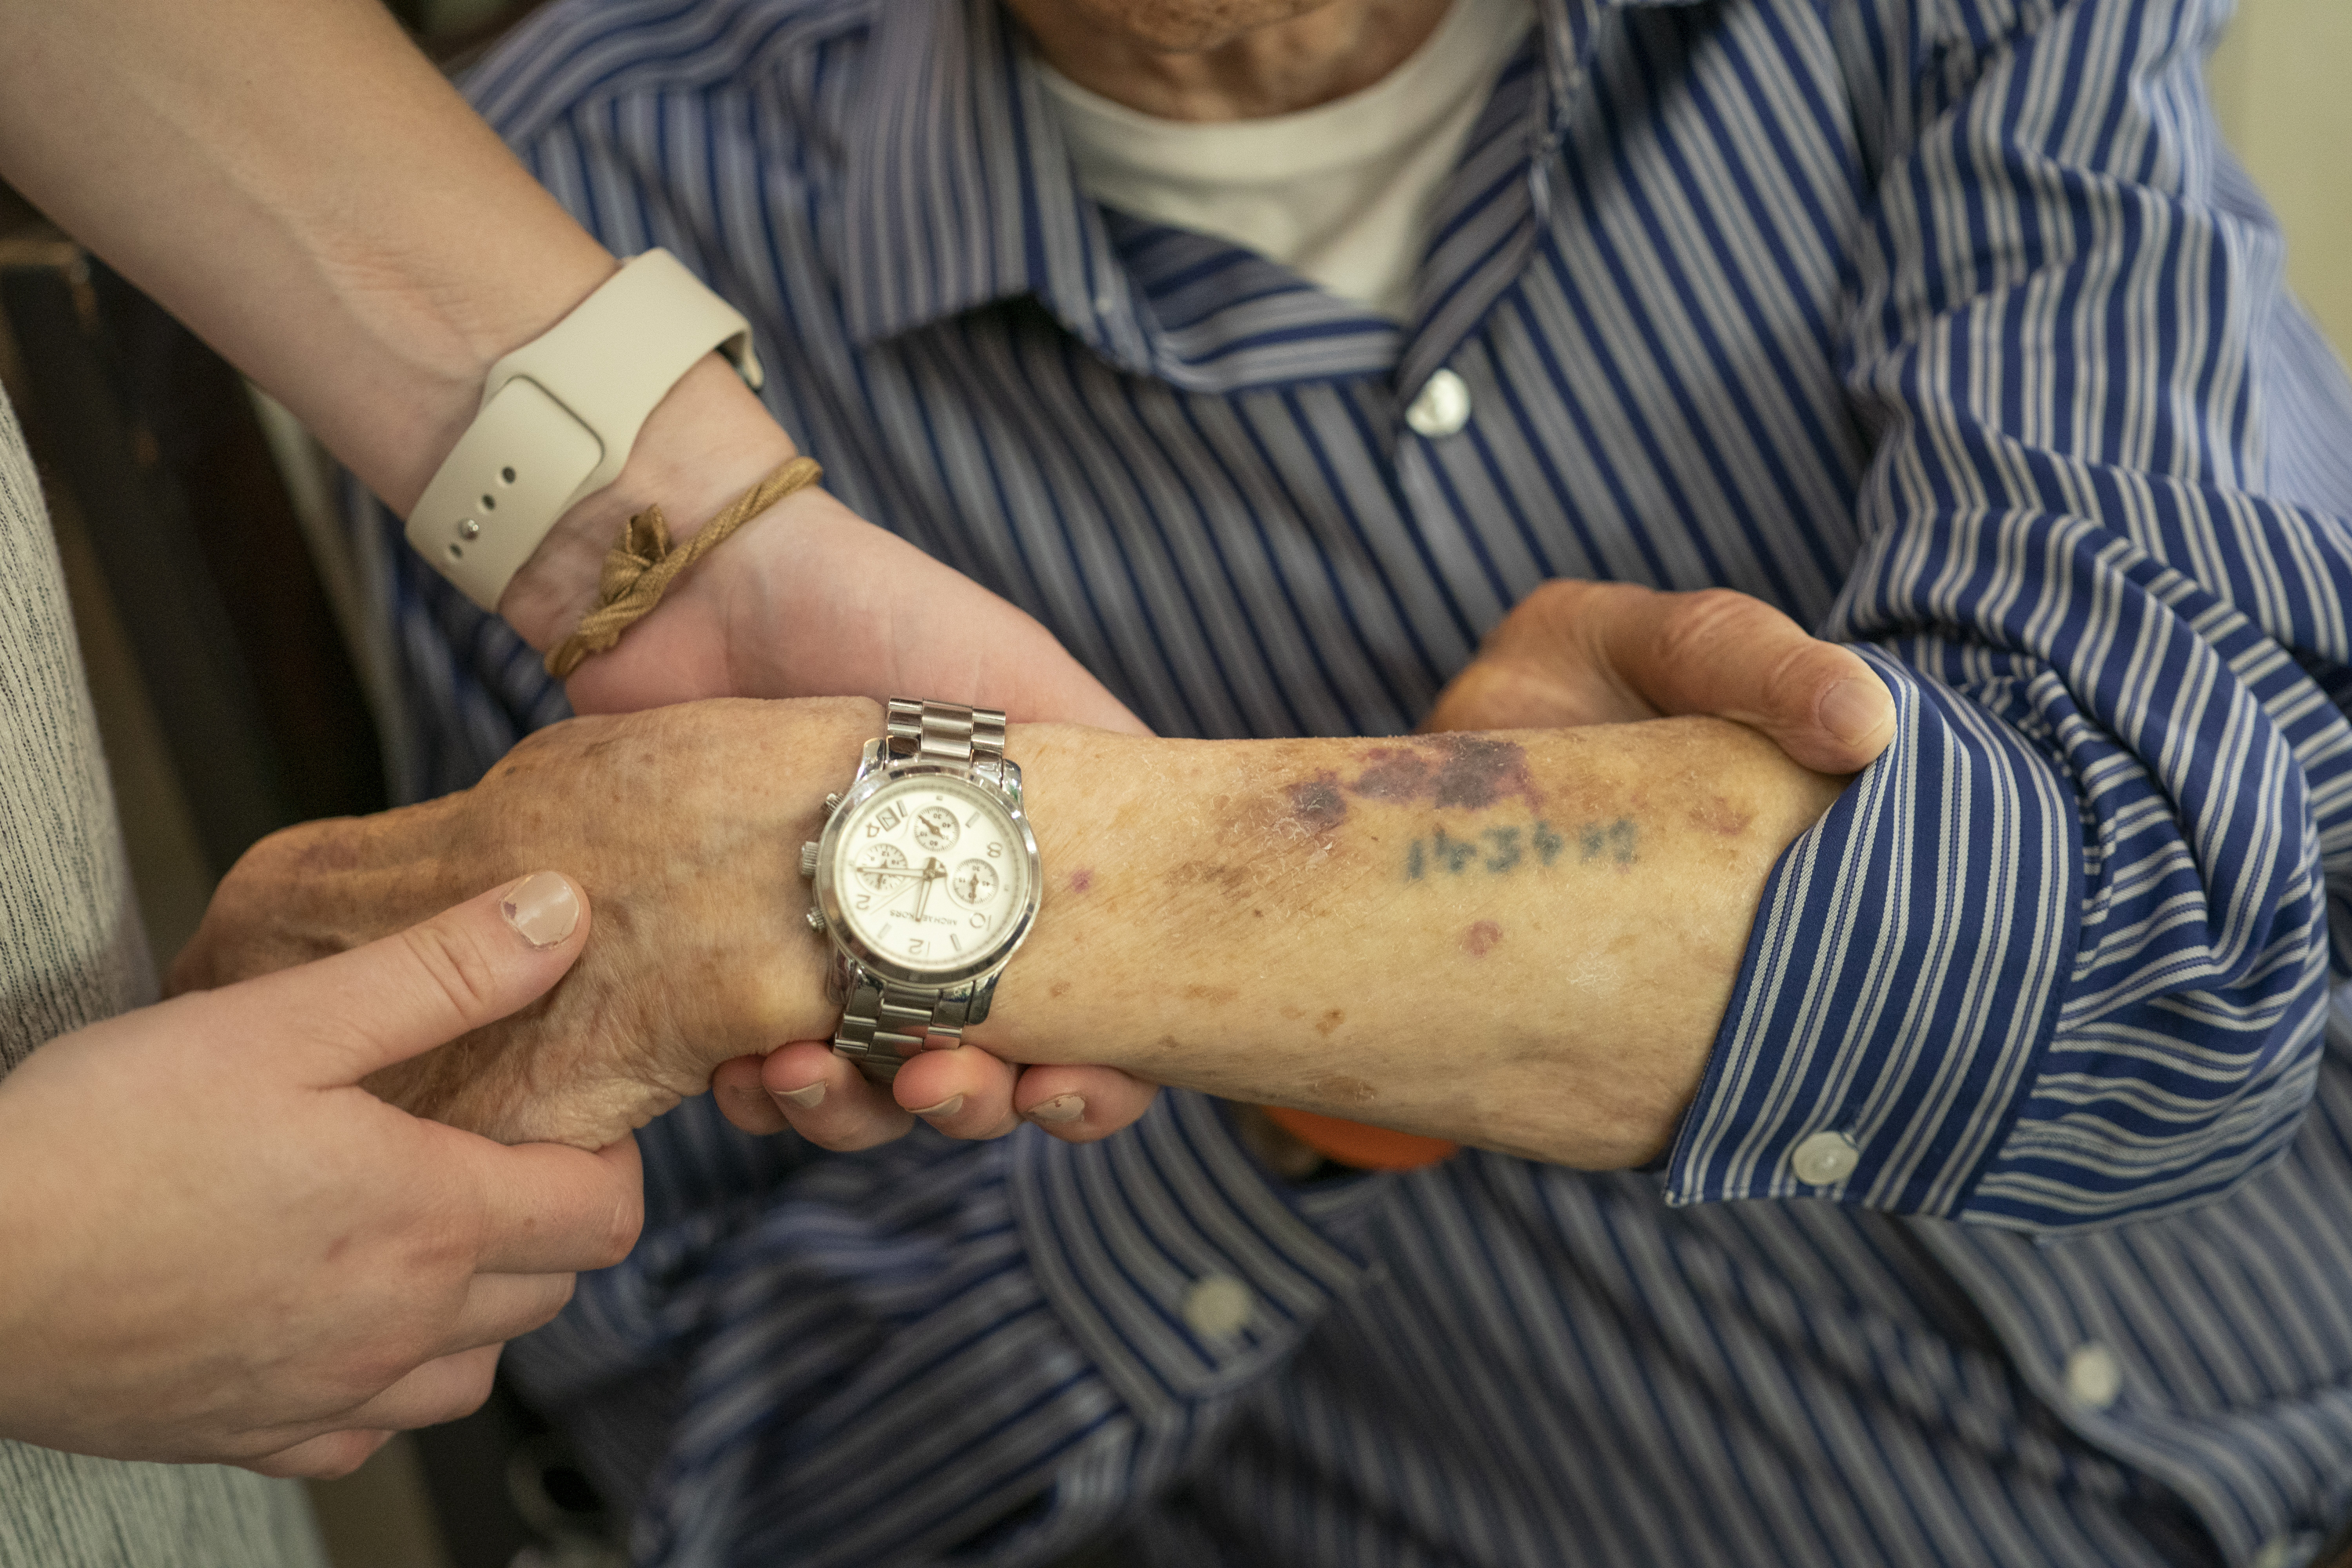 Tampa Holocaust survivor marks 100th birthday, still mourns family